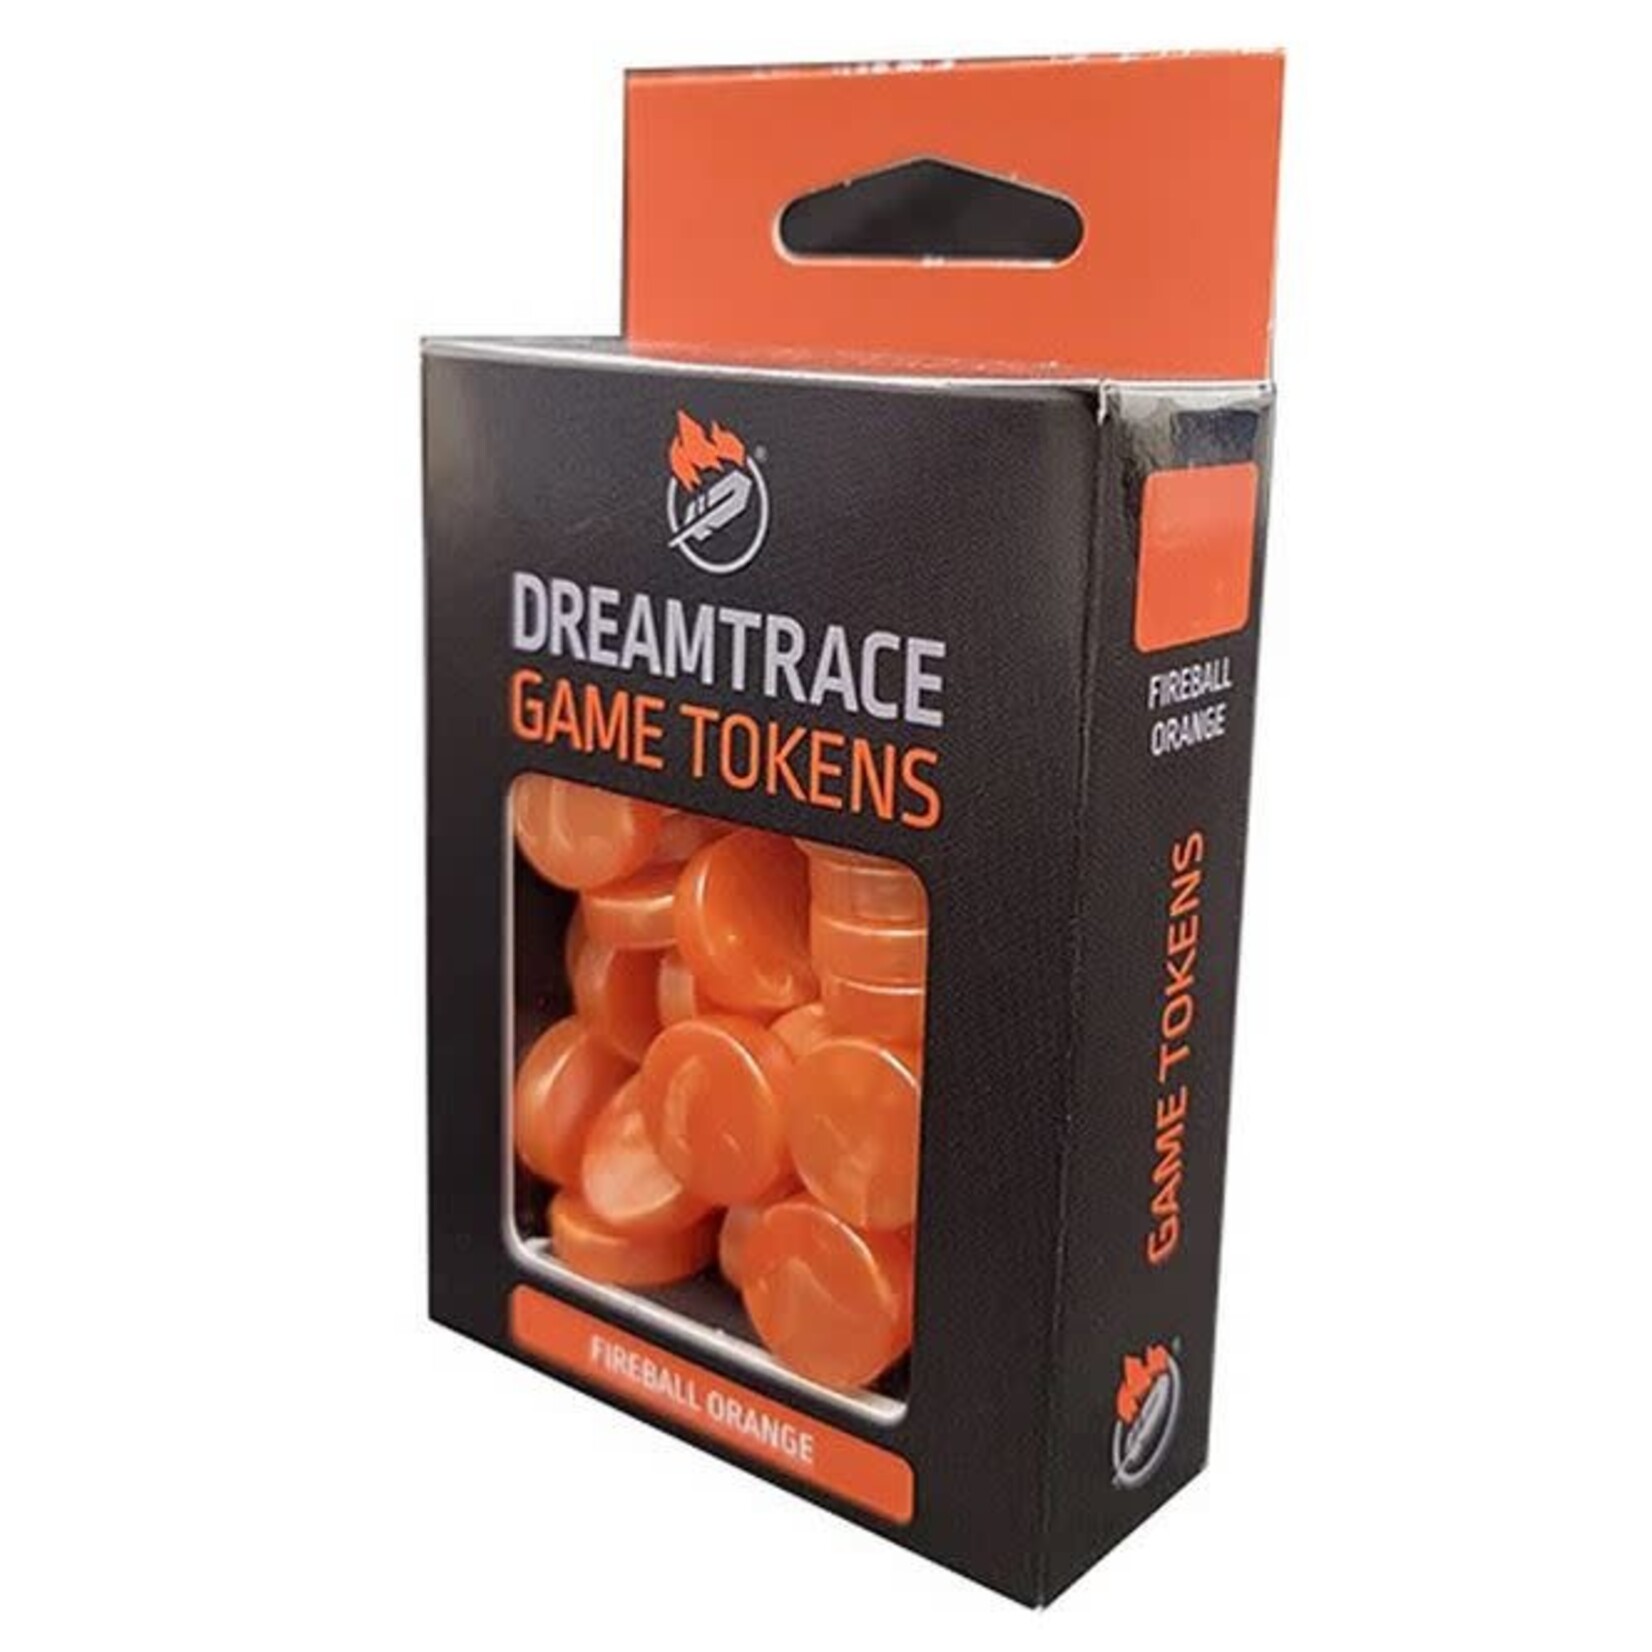 Dreamtrace Game Tokens: Fireball Orange